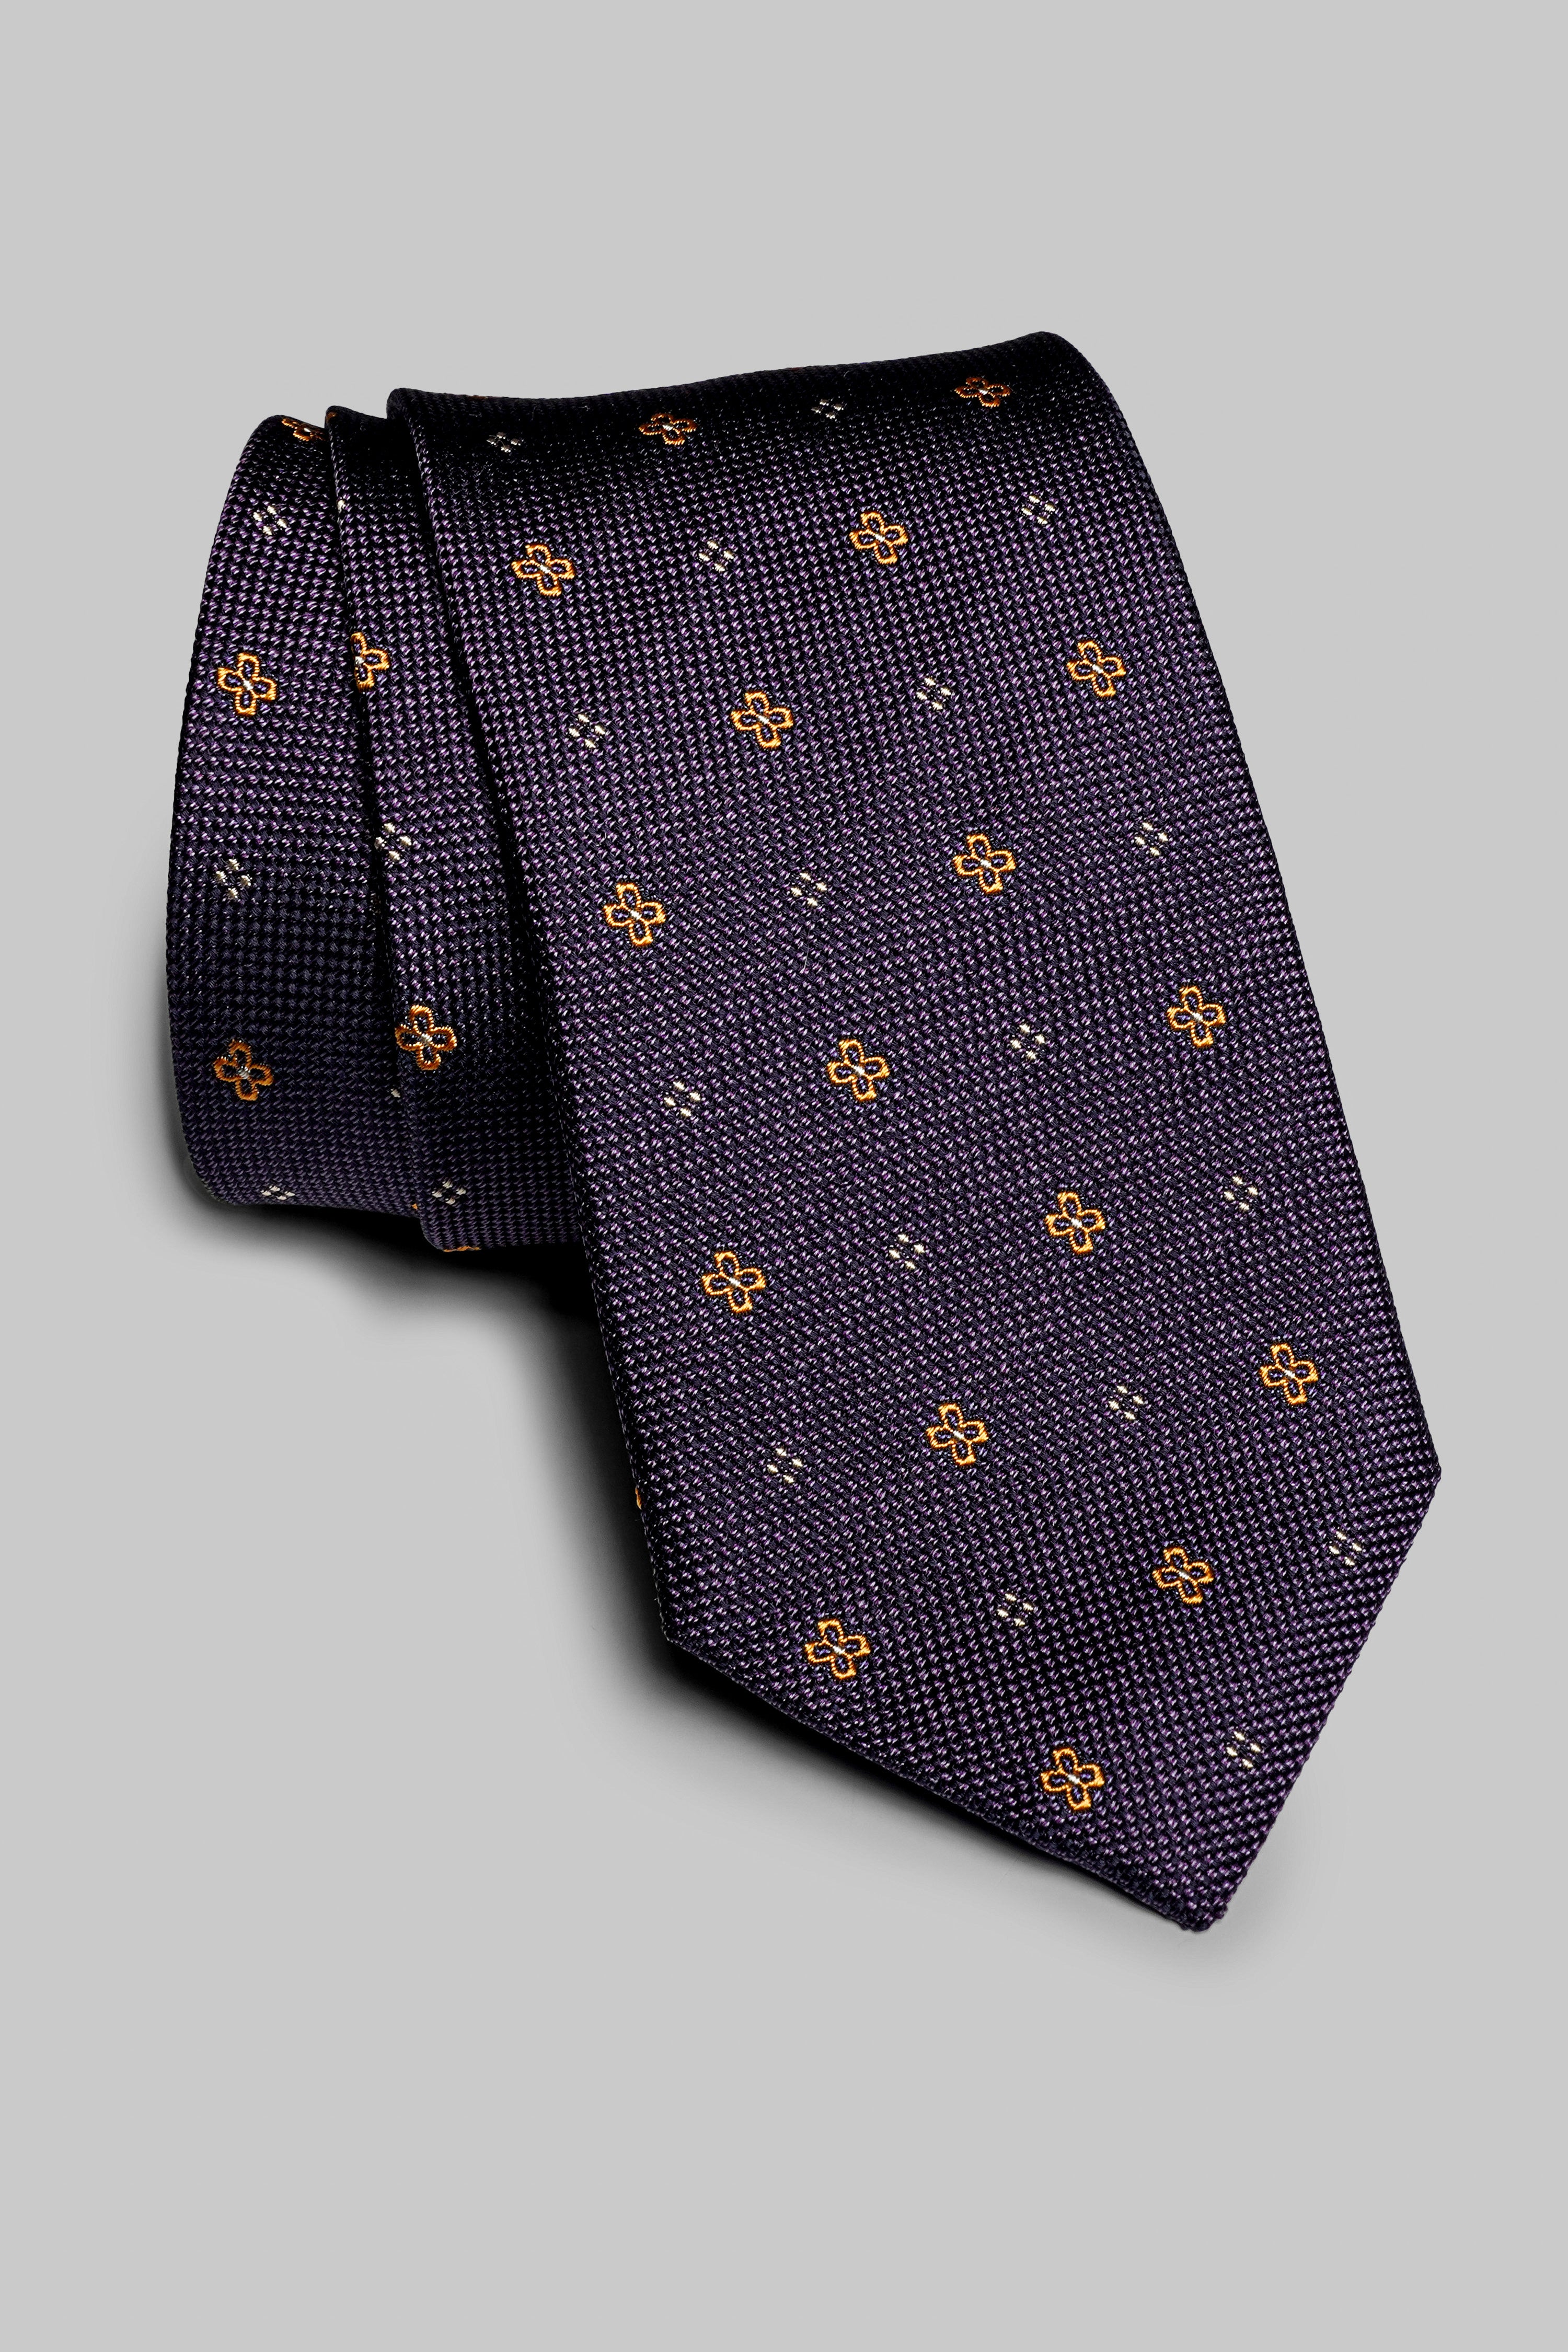 Image of St. George Silk Tie in Purple-Jack Victor